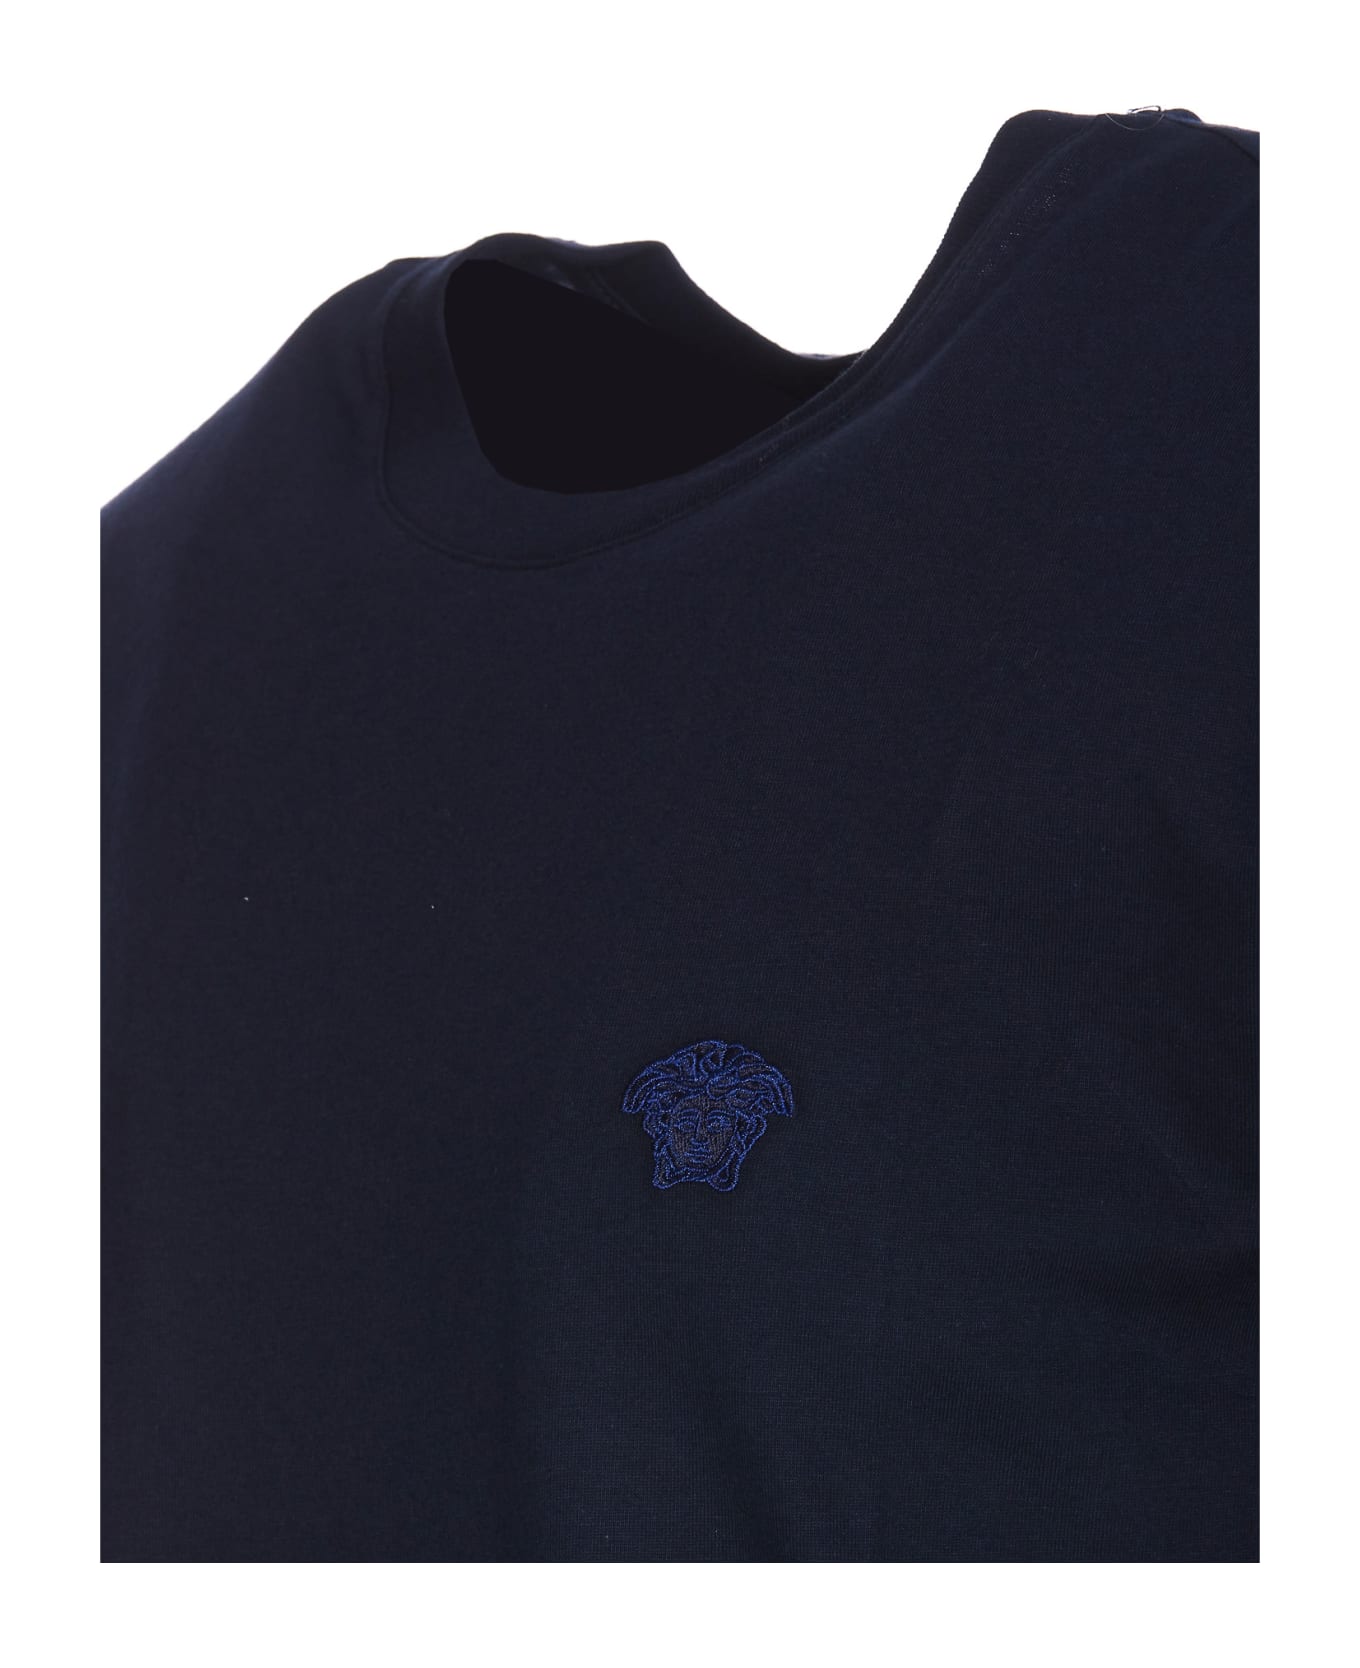 Versace Medusa Logo T-shirt - Blue